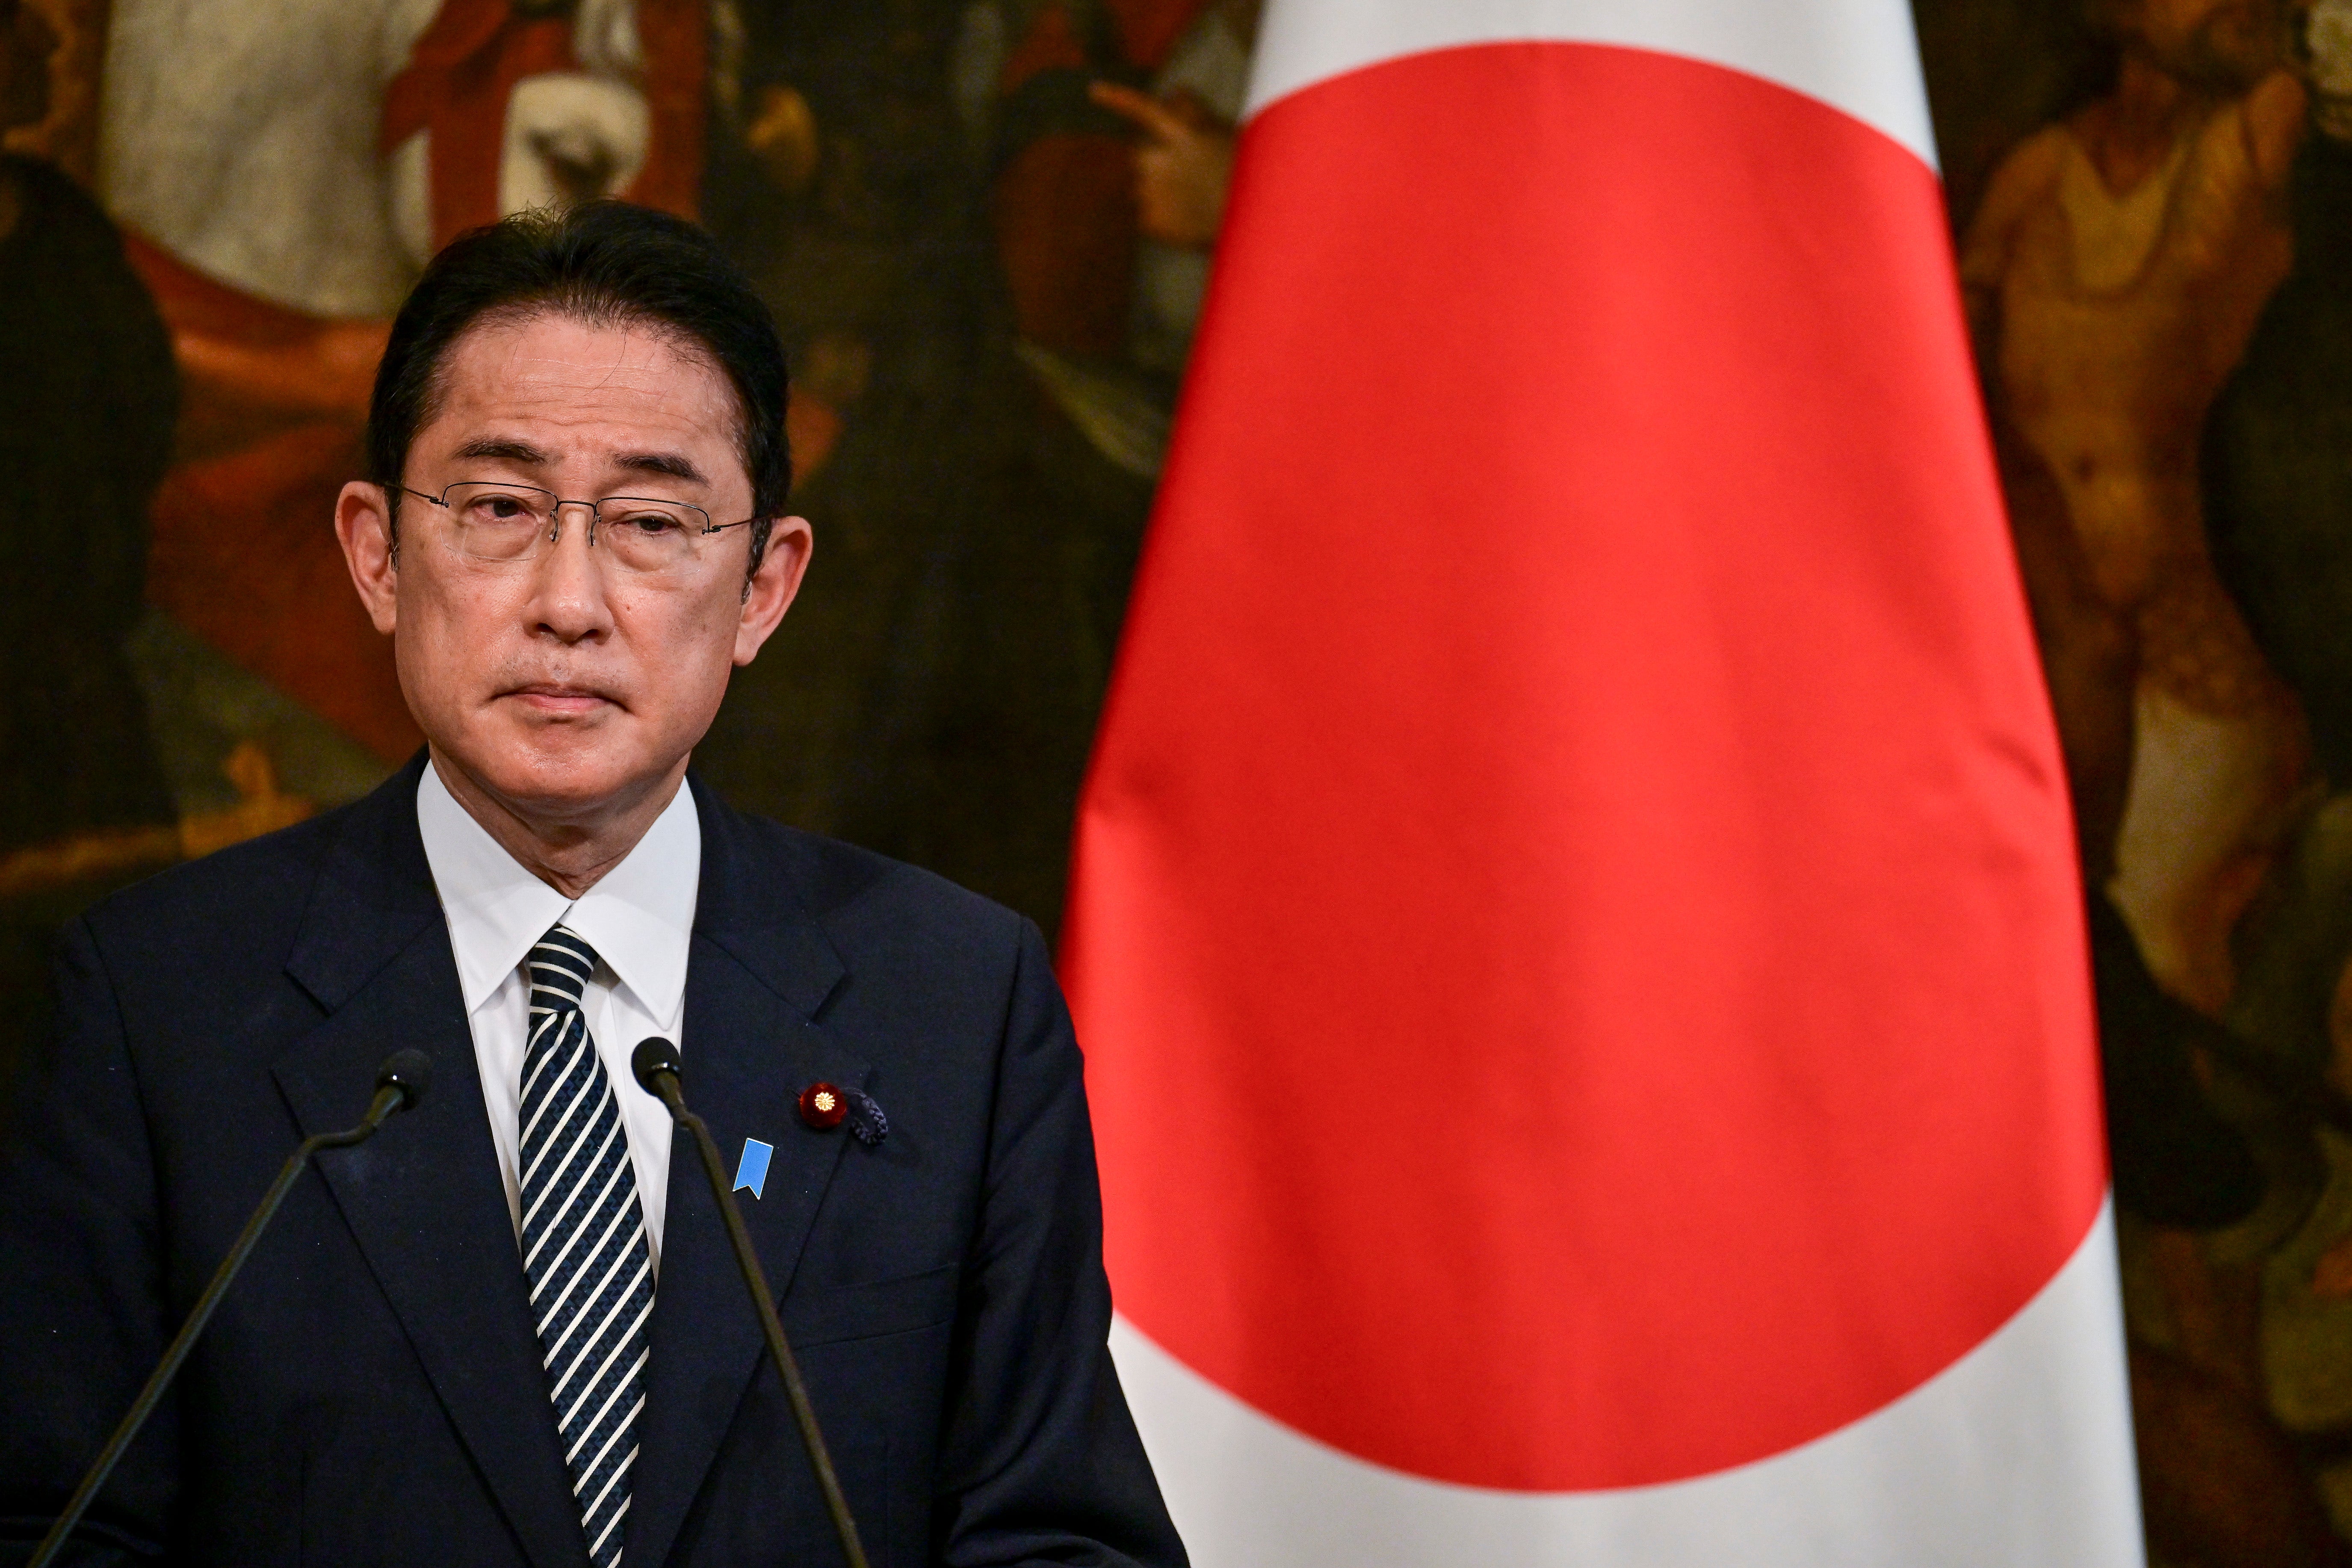 法王と日本の首相は、日本海での北朝鮮のミサイル発射後の核兵器について話し合う